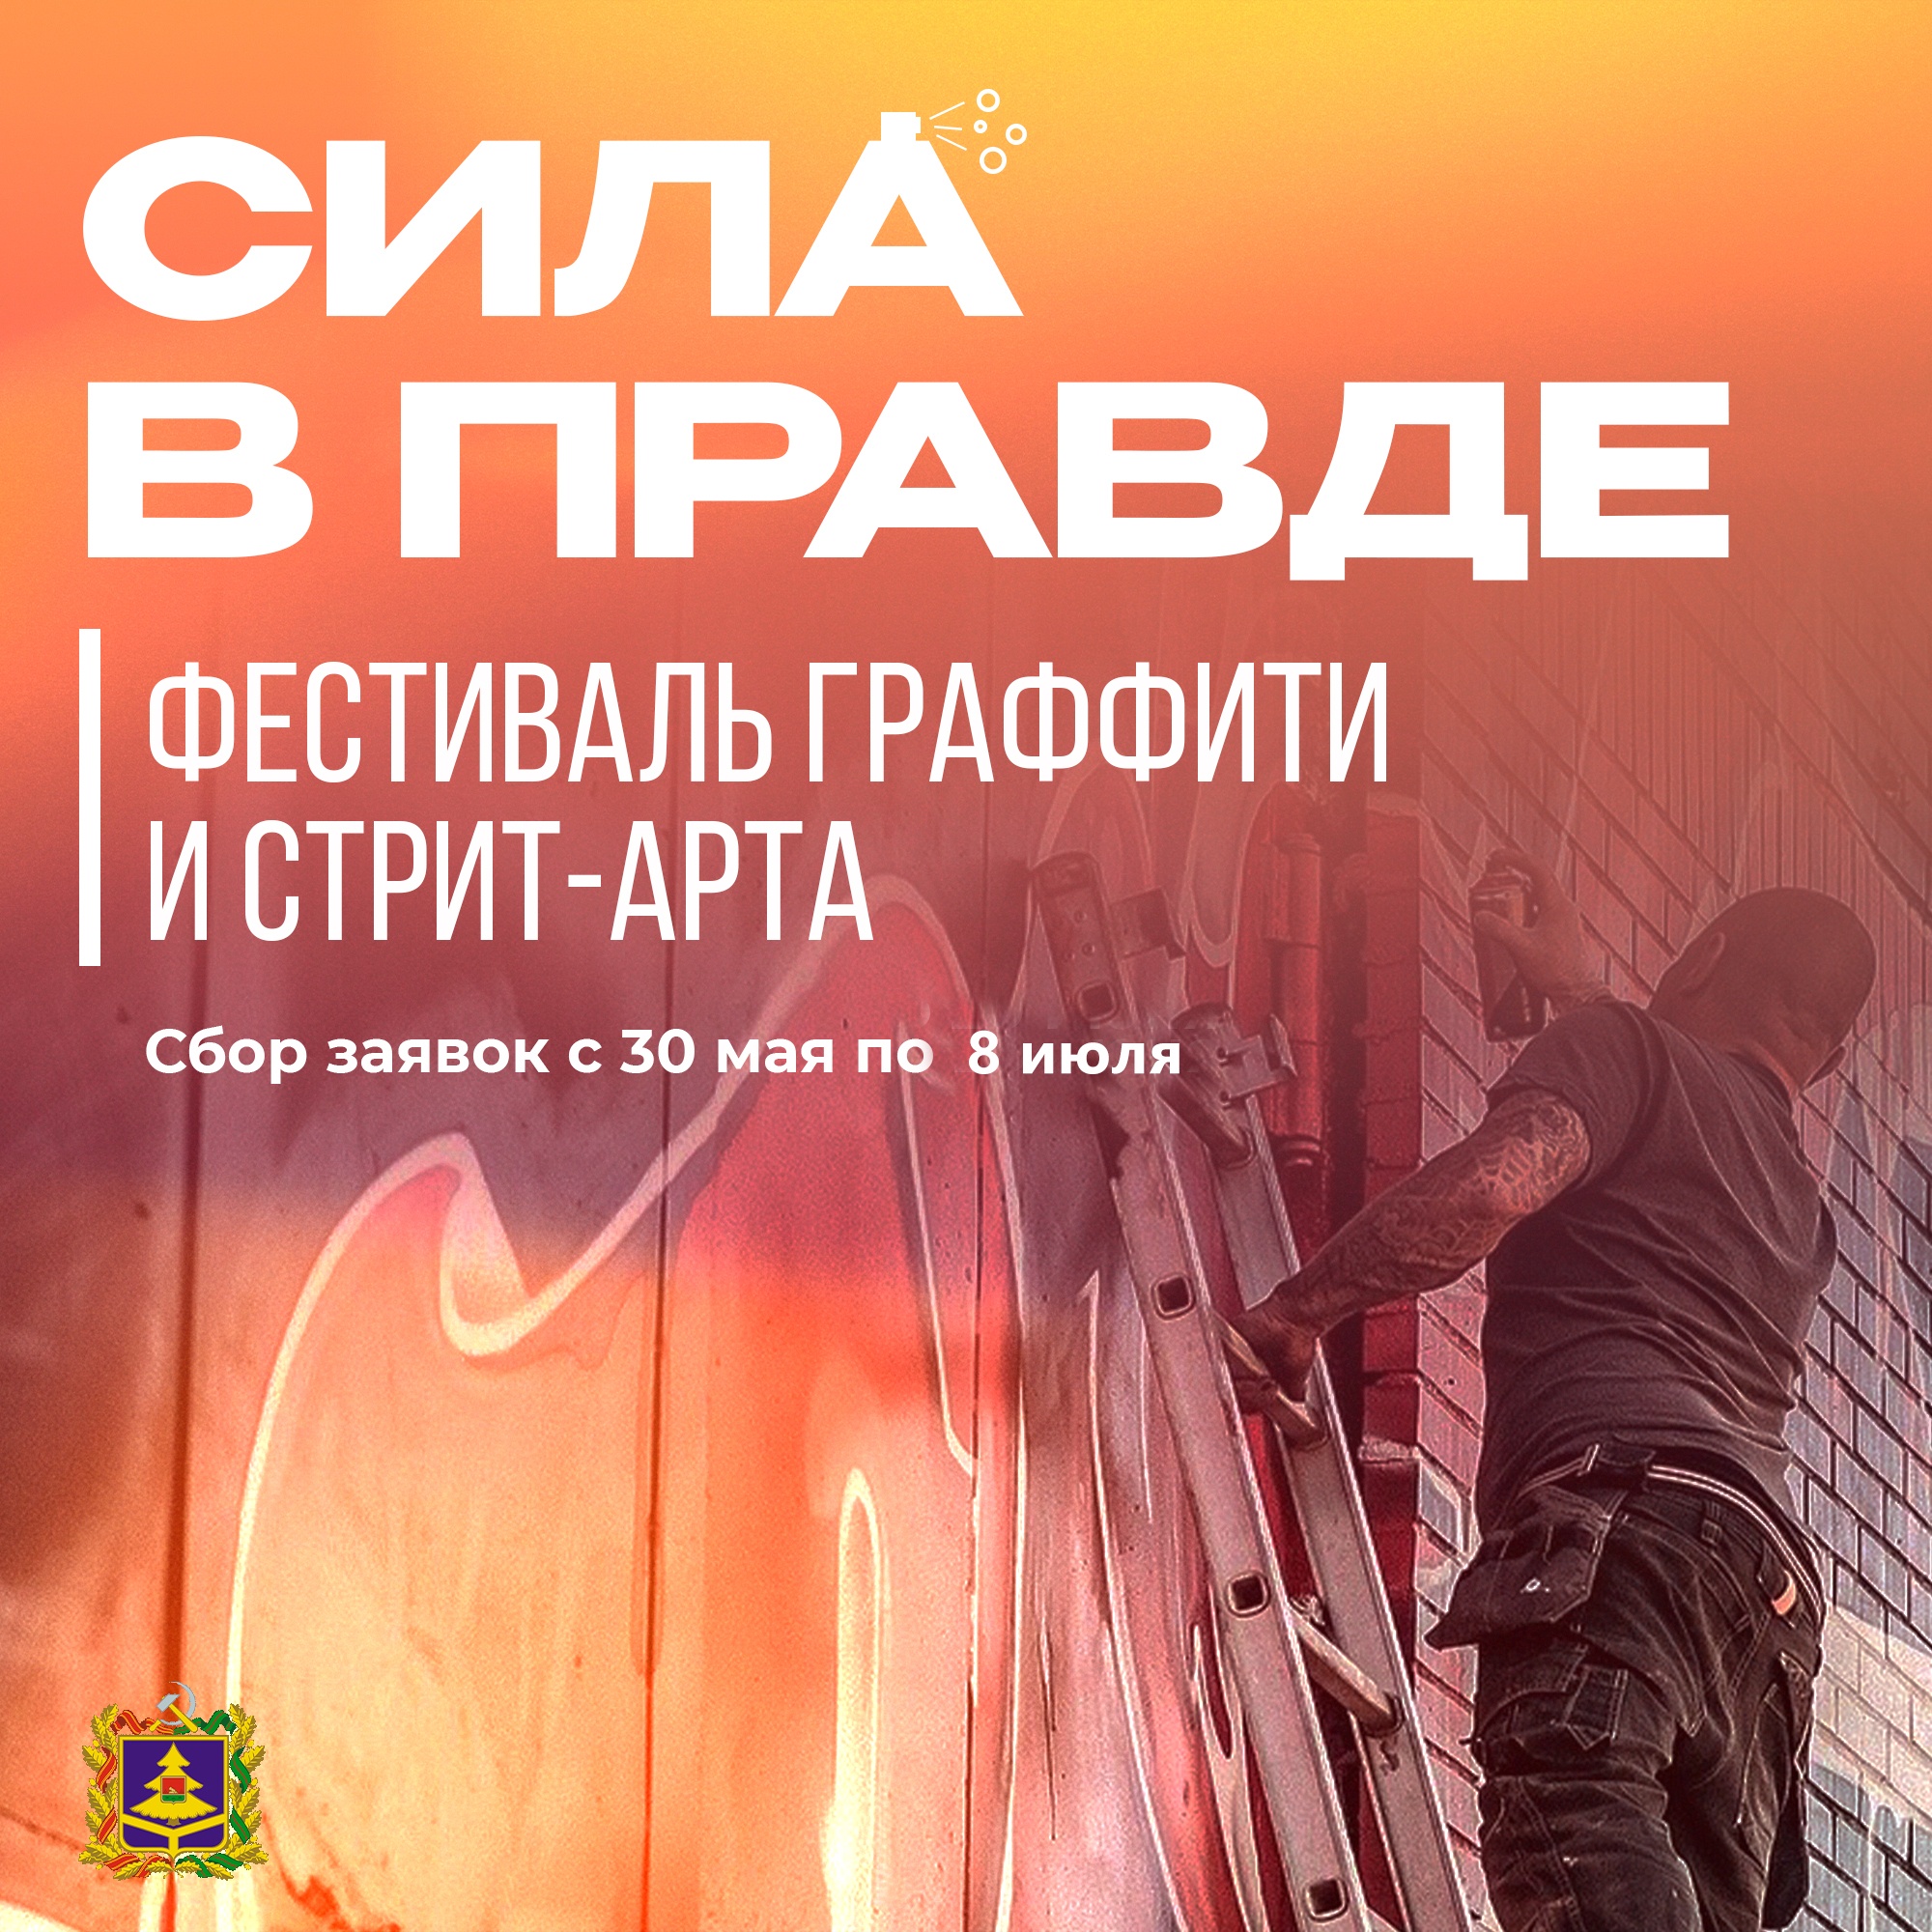 Приём эскизов на фестиваль стрит-арта в Брянске продлён до 8 июля